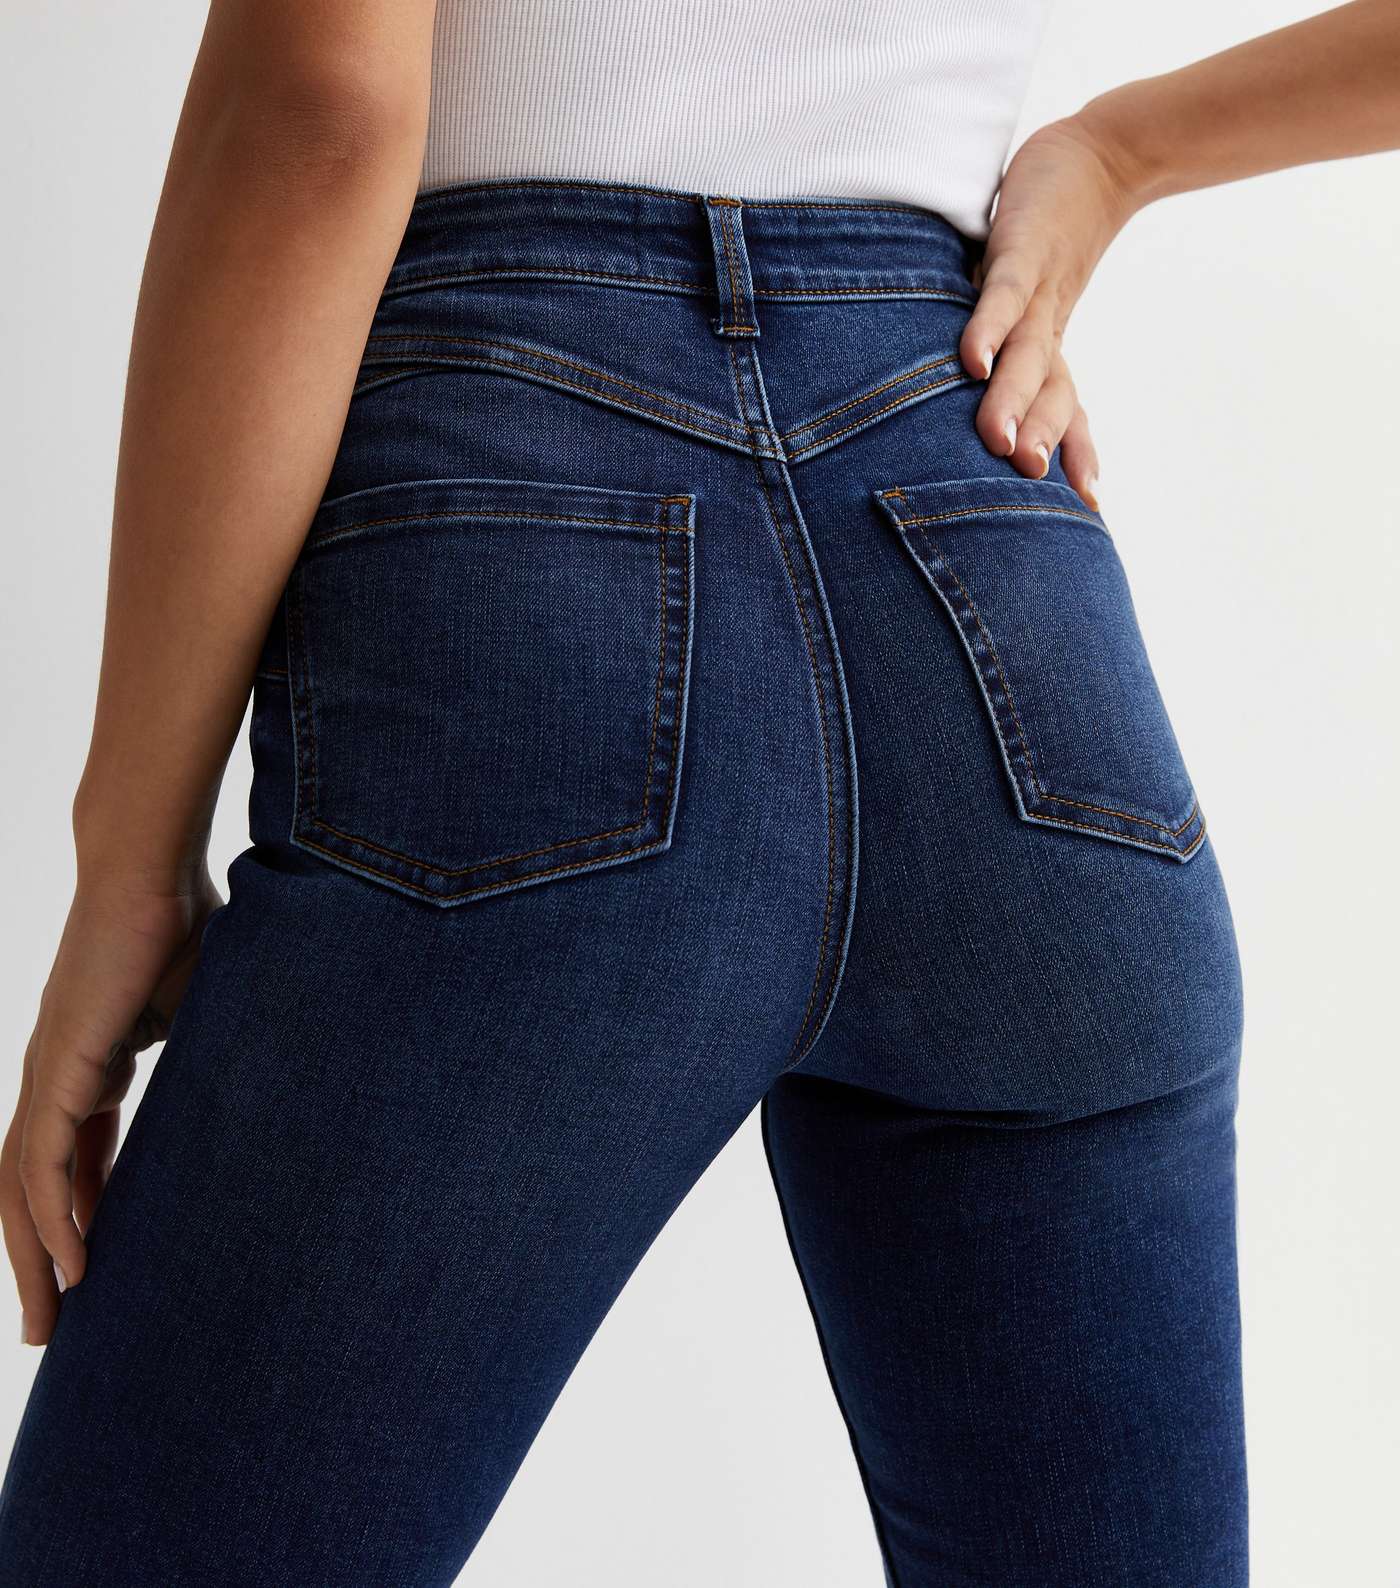 Navy Lift & Shape Jenna Skinny Jeans Image 3